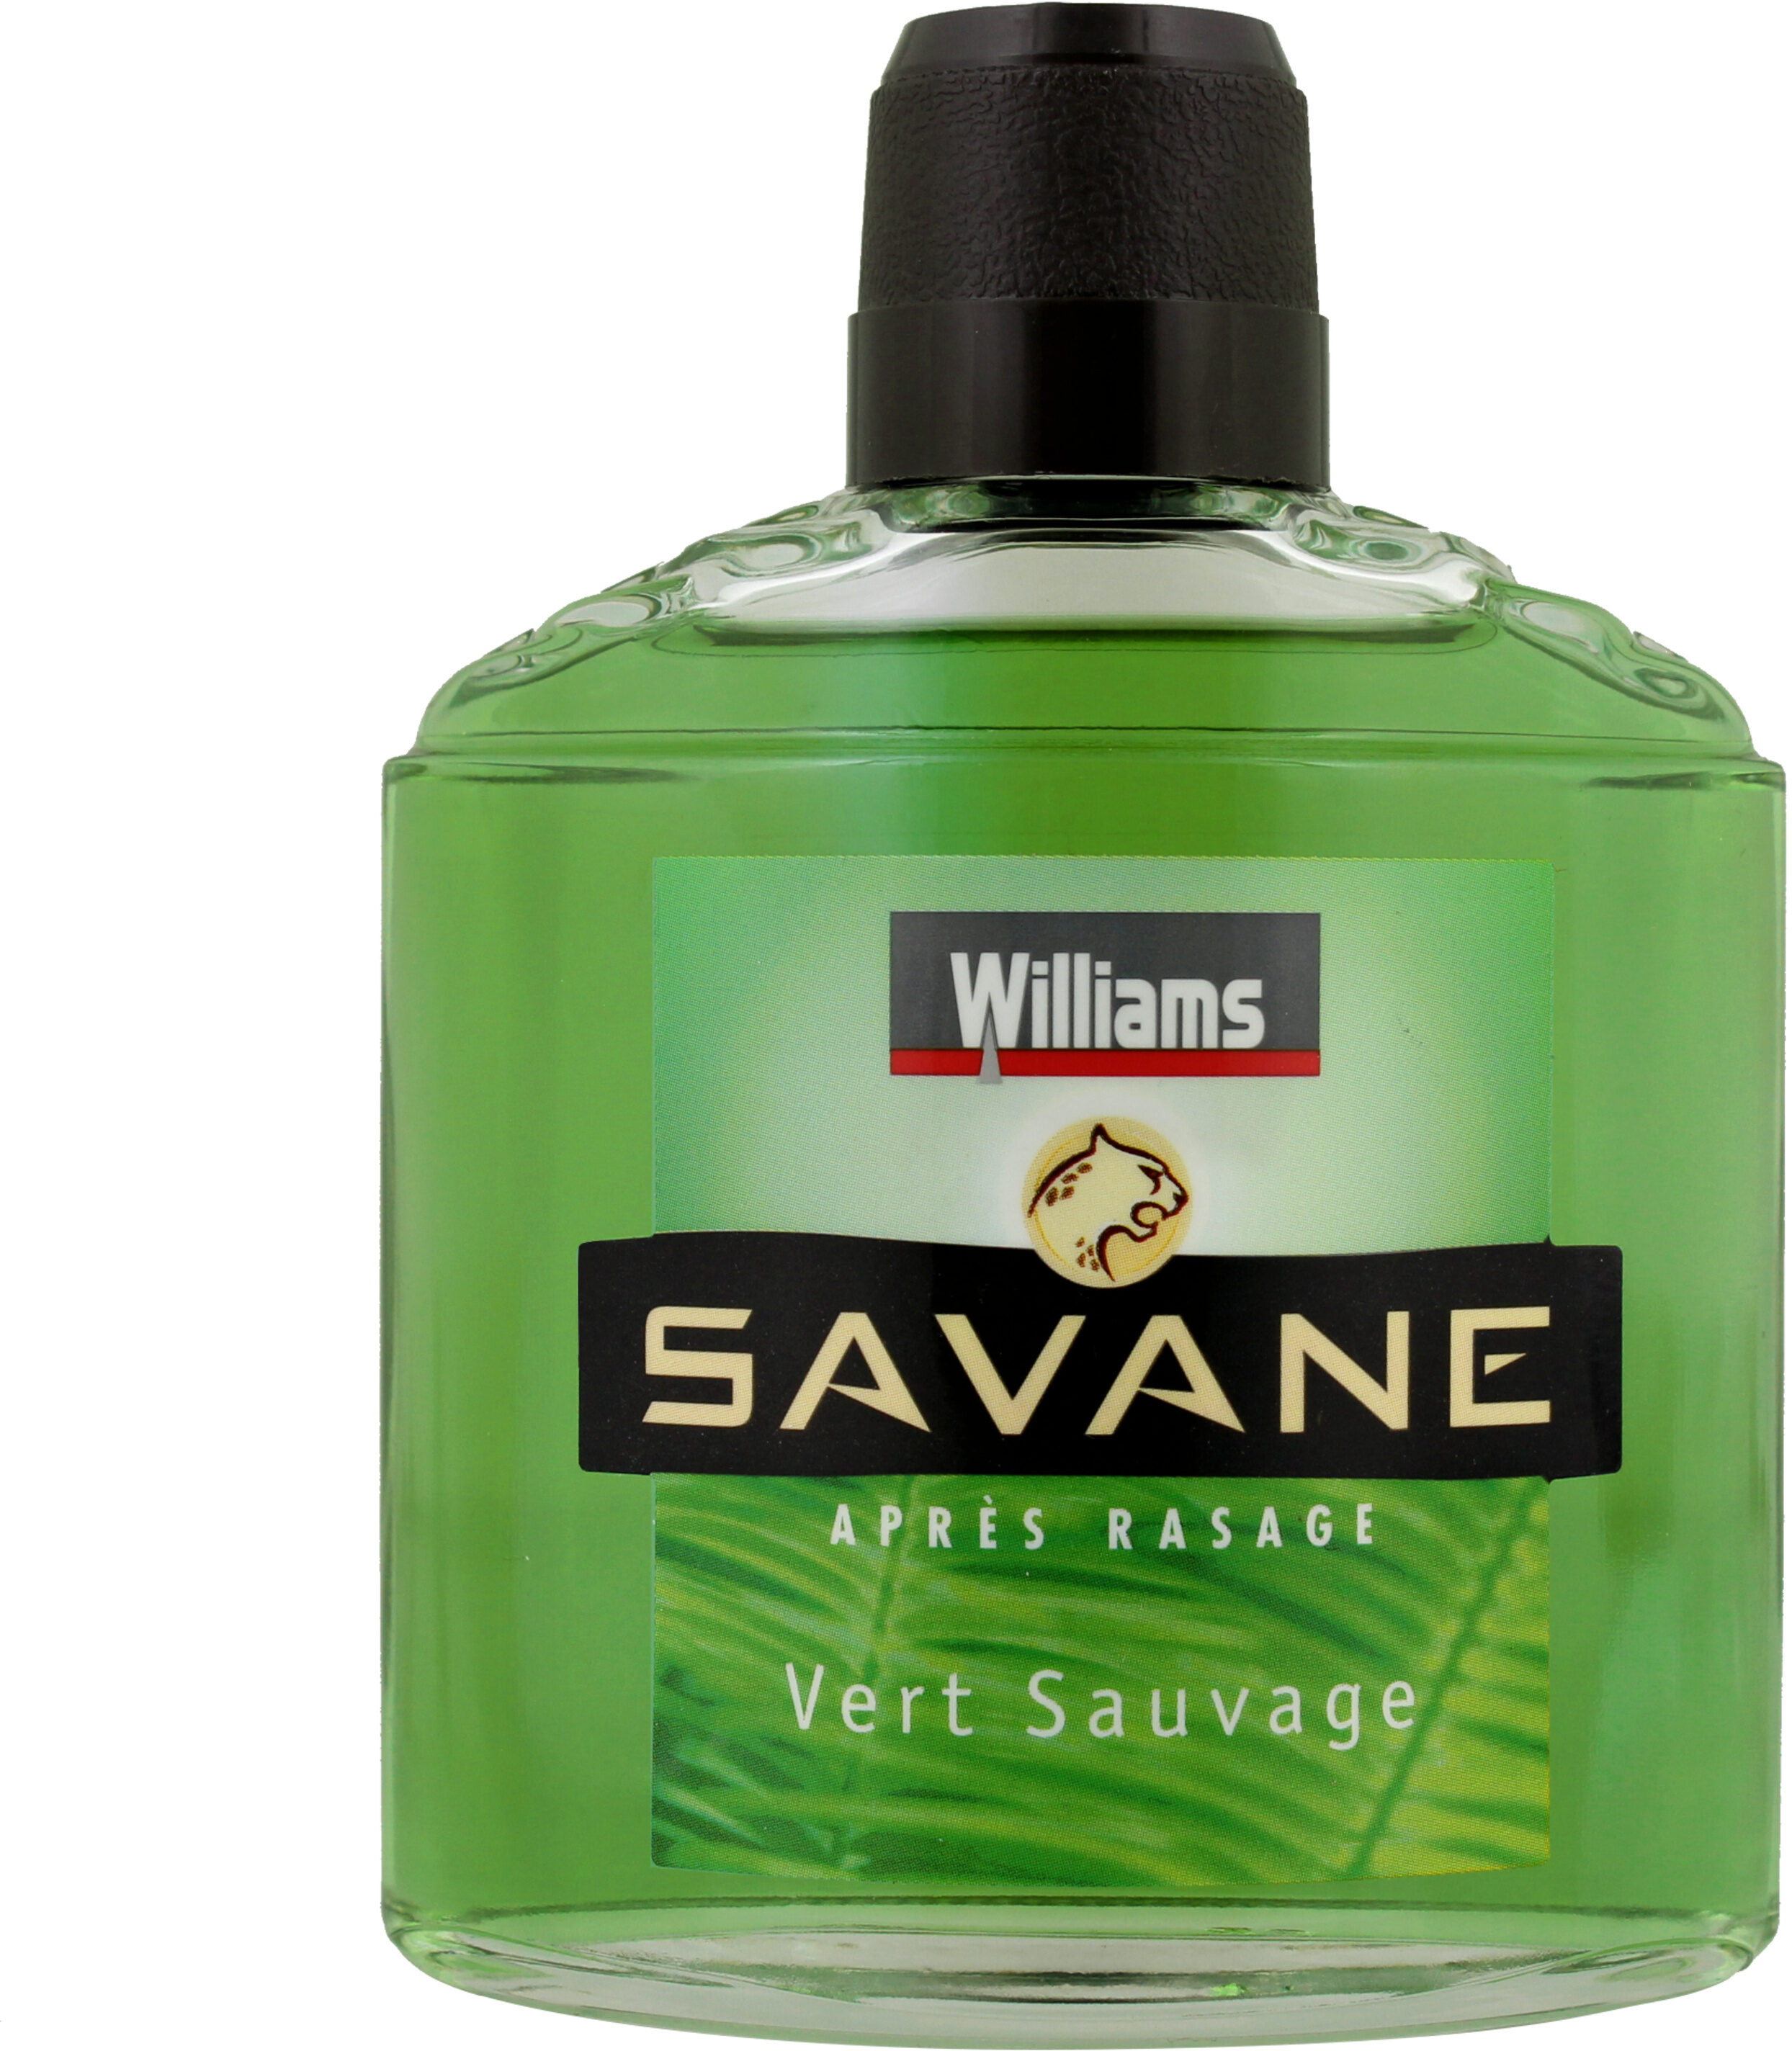 Williams Après-Rasage Savane Vert Sauvage 125ml - Product - fr